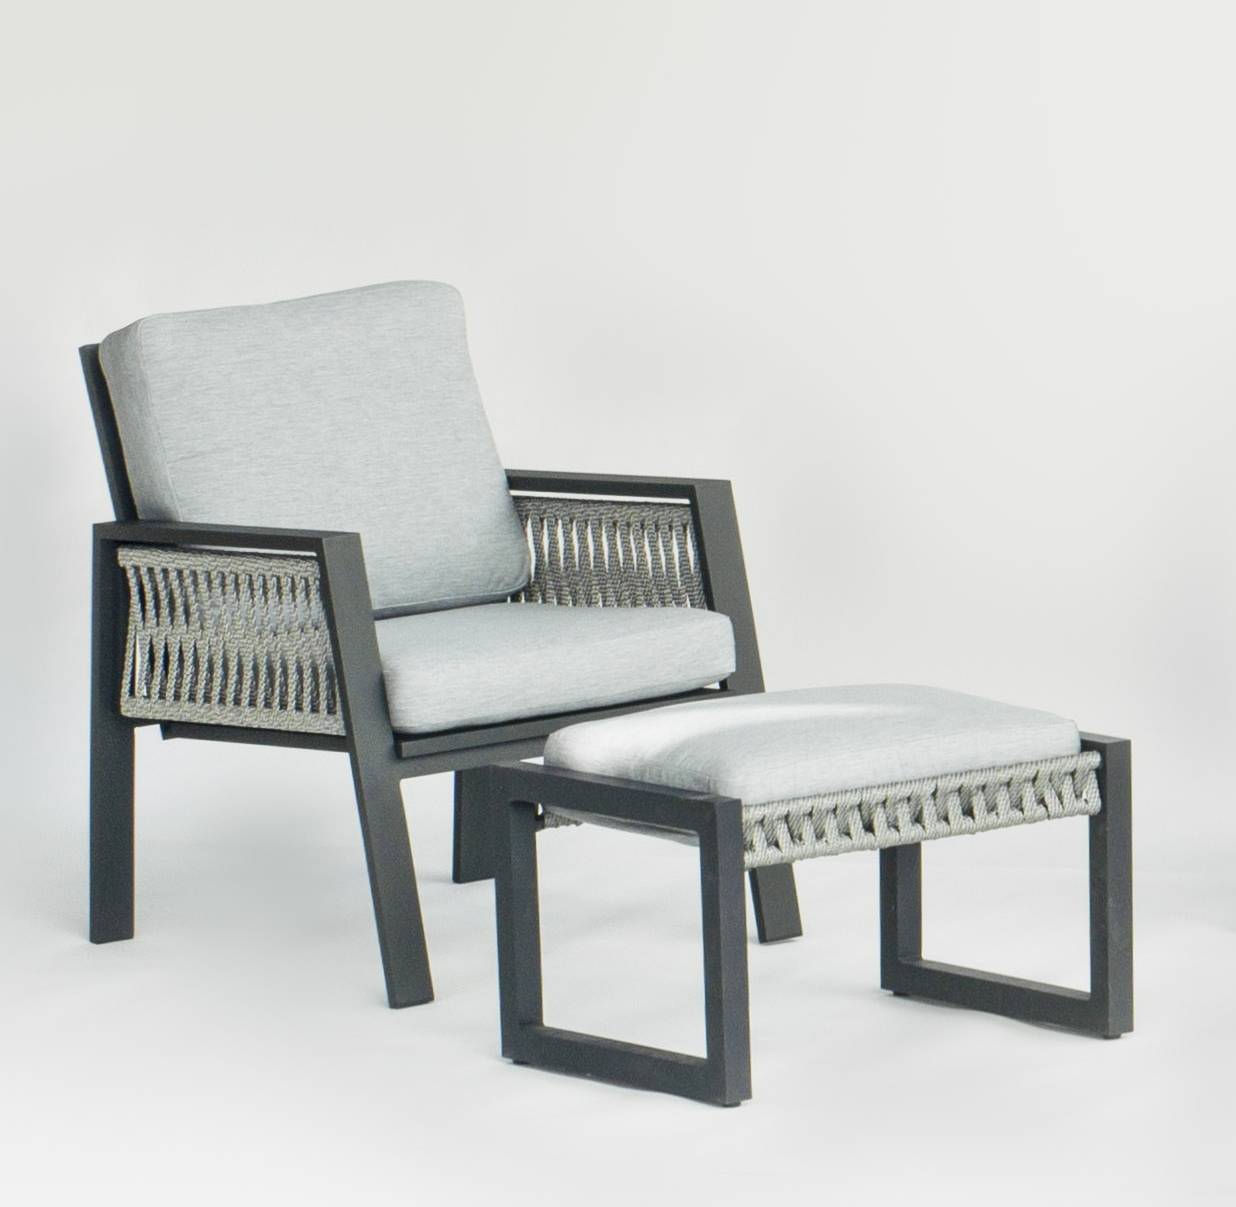 Set Aluminio Aldara-7 - Conjunto aluminio y cuerda: 1 sofá de 2 plazas + 2 sillones + 1 mesa de centro + cojines. En color blanco o antracita.